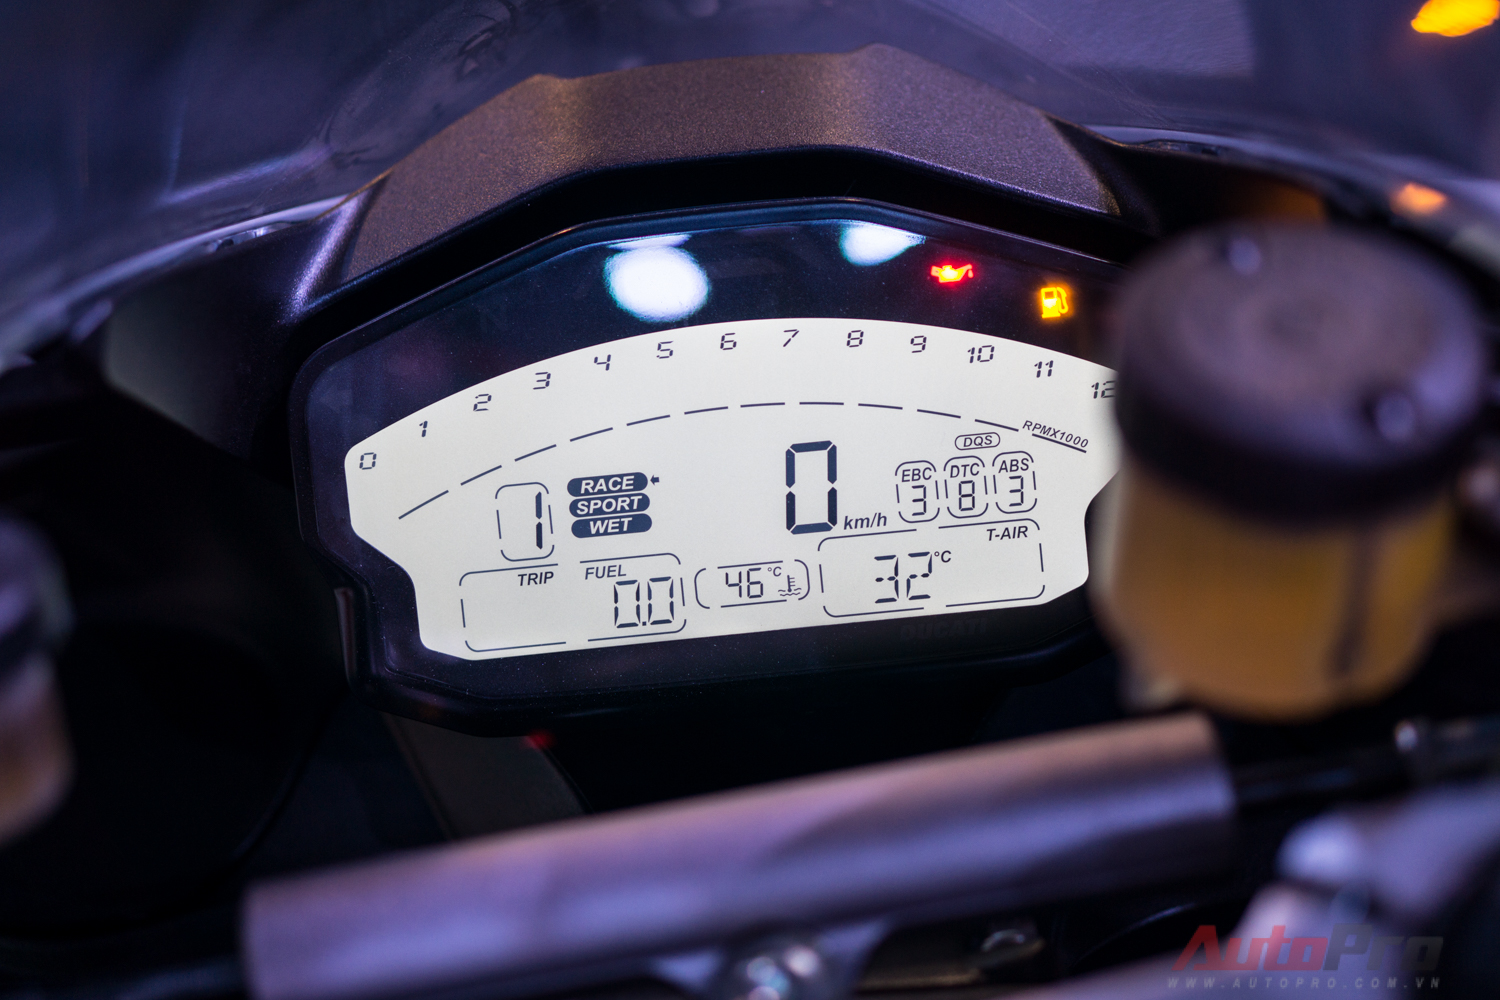 
Đồng hồ LCD hiển thị đầy đủ các thông số của xe.
